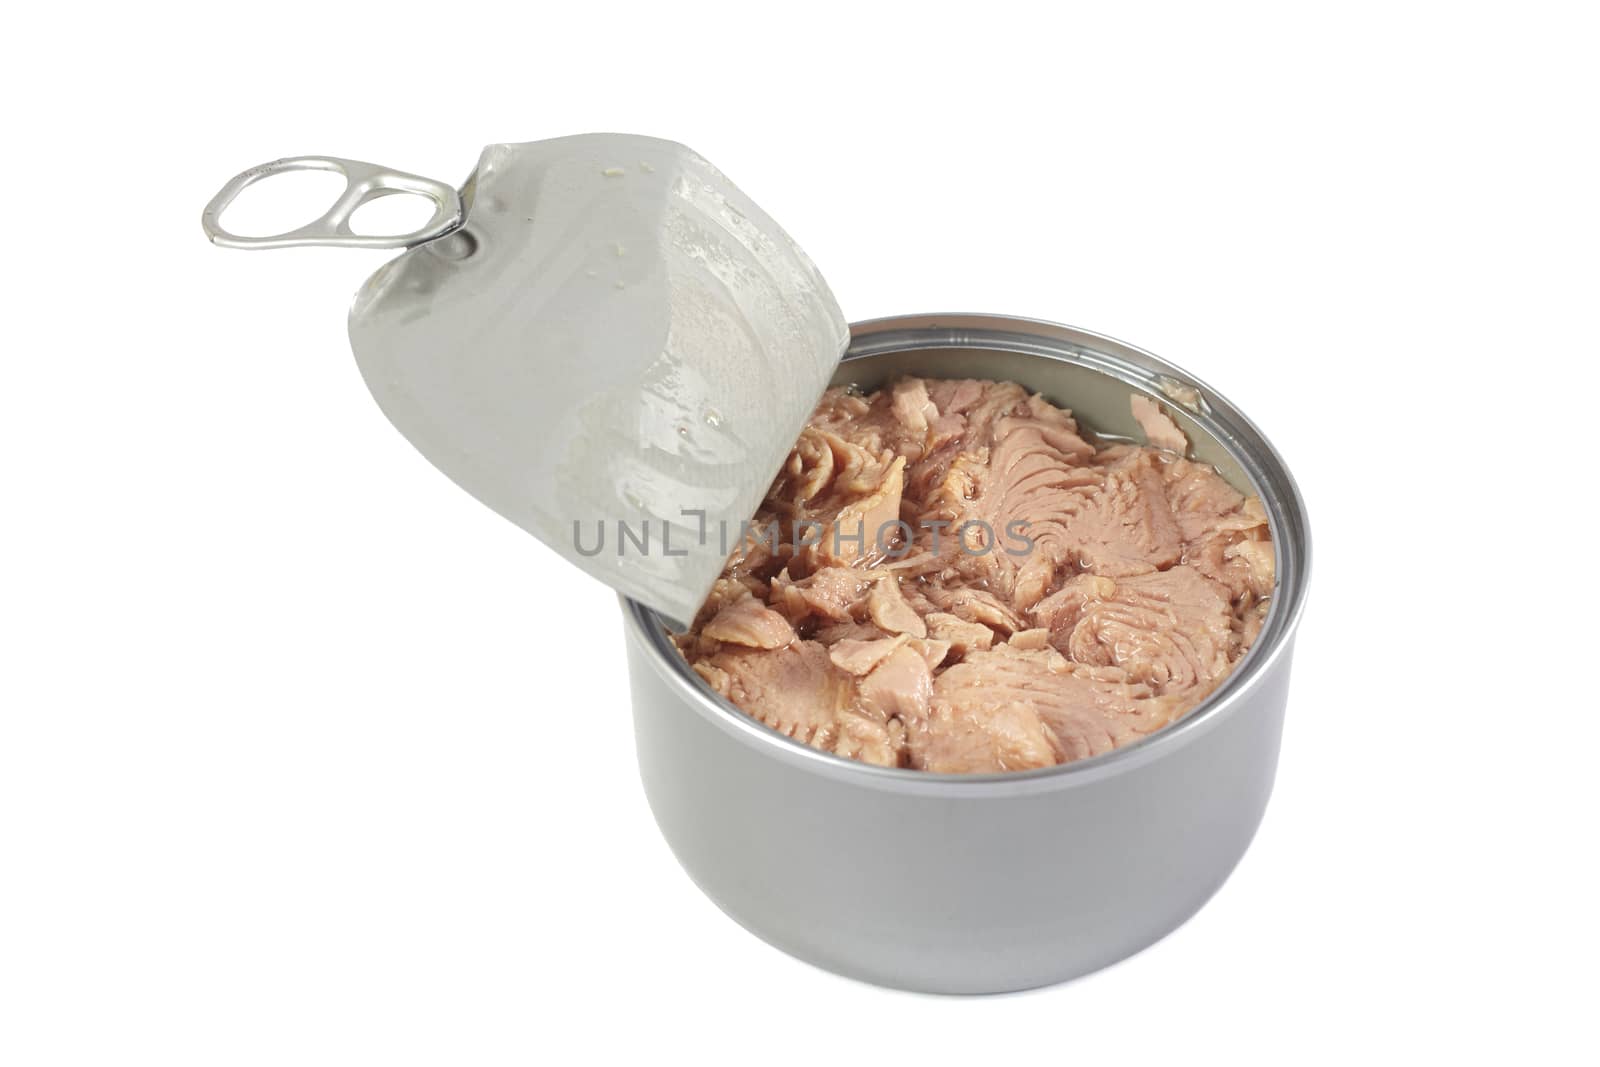 Open tuna tin on a white background